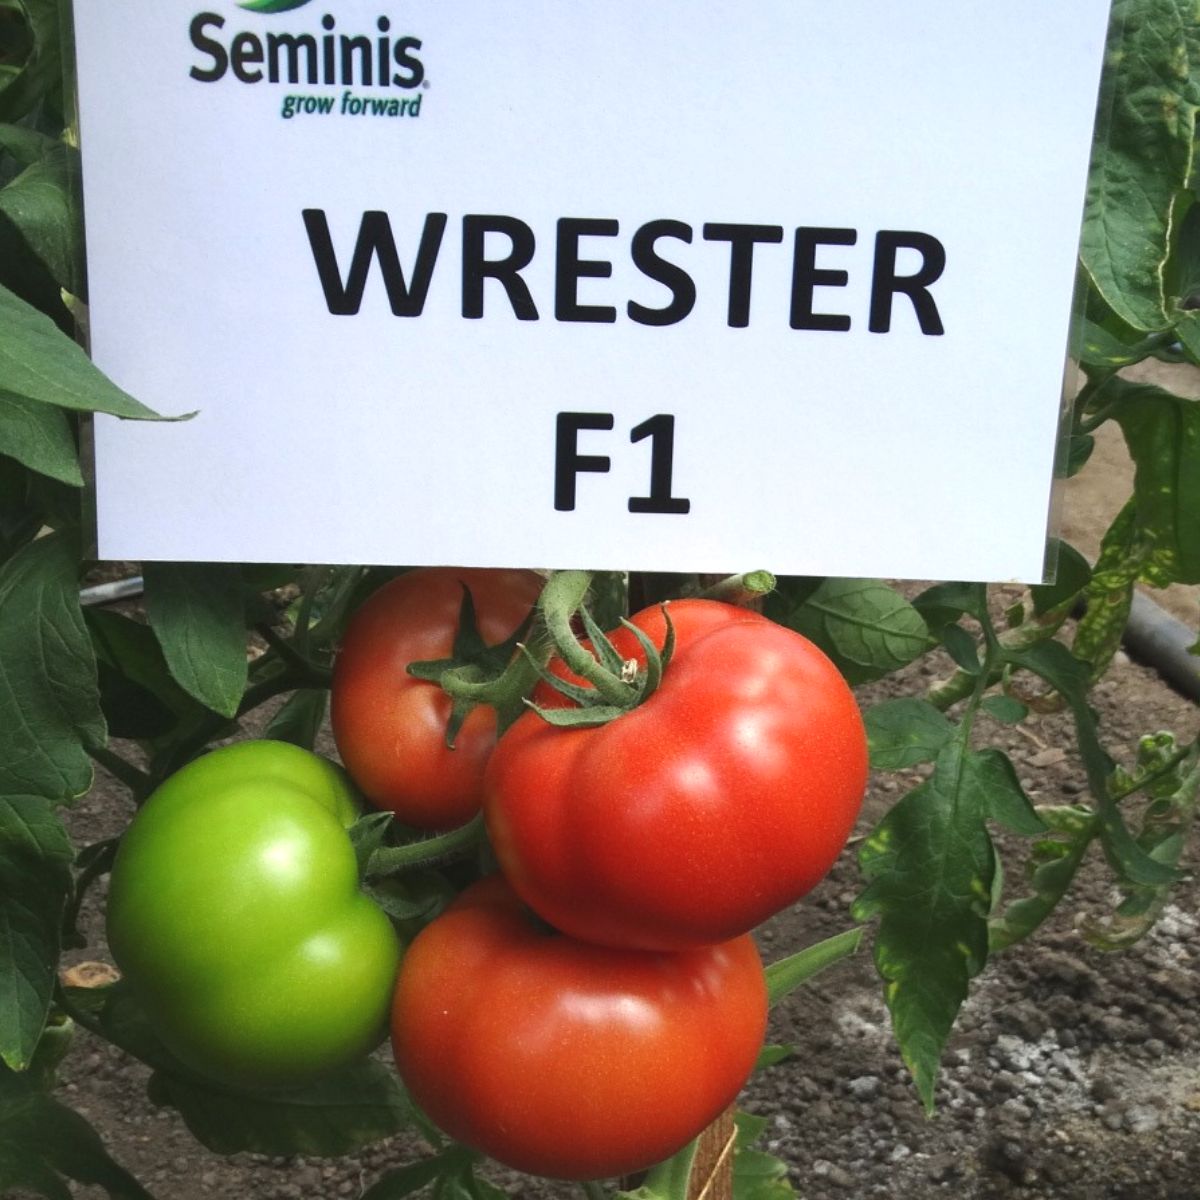 Tomate - Seminte de tomate Wrestler F1, 100 seminte, hectarul.ro